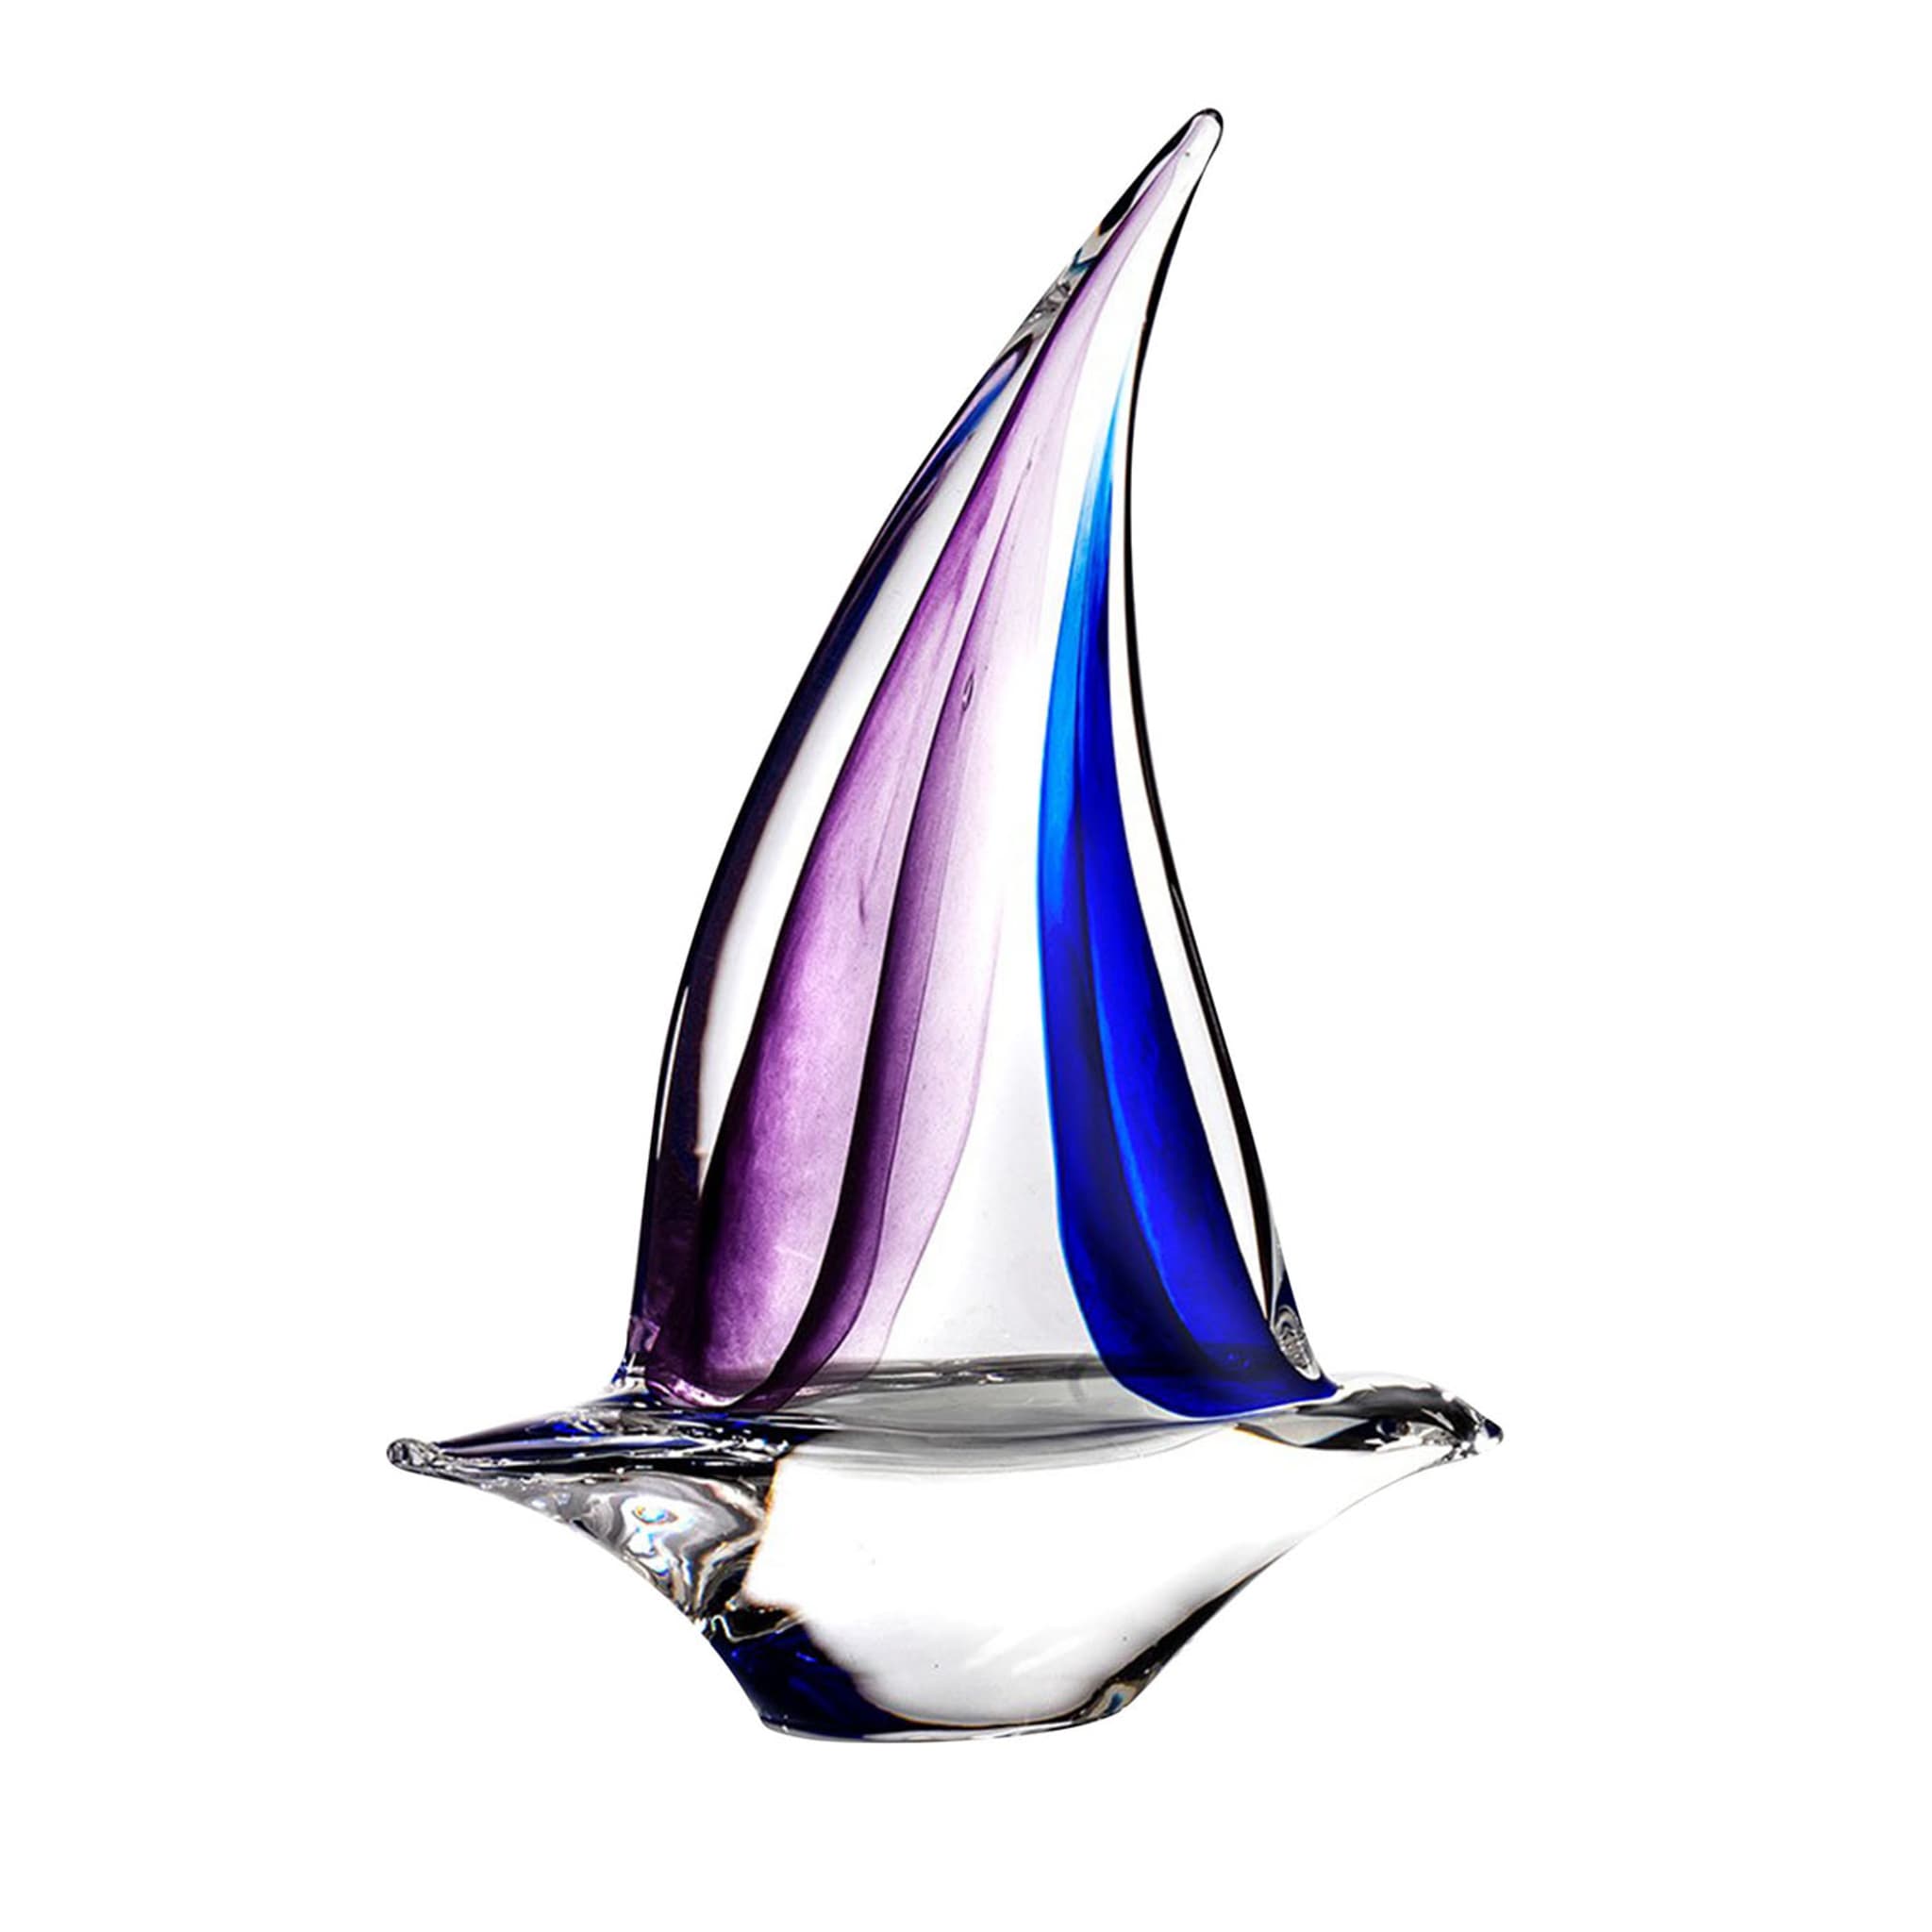 Scultura di barca a vela viola e blu - Vista principale